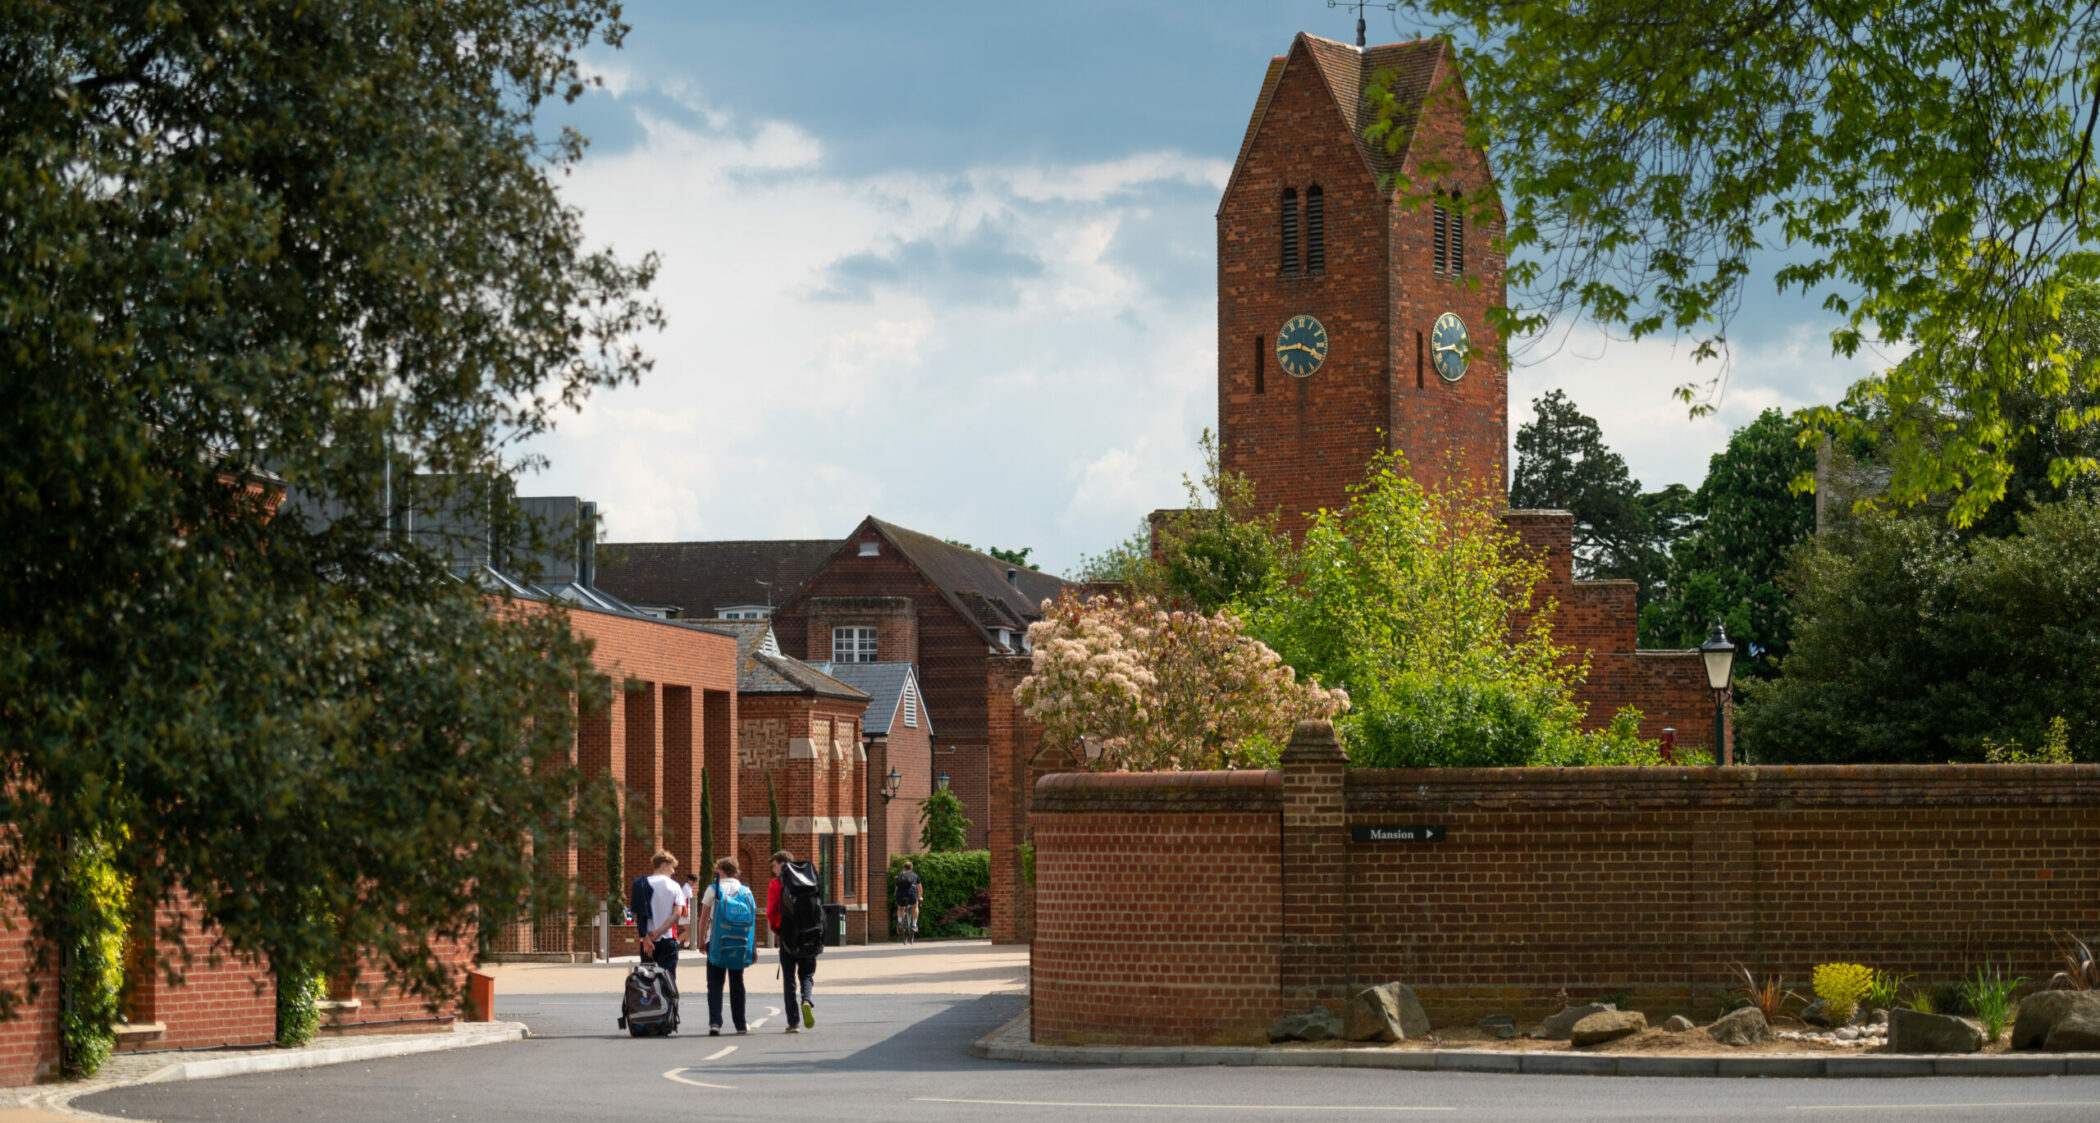 Radley College Campus with clocktower